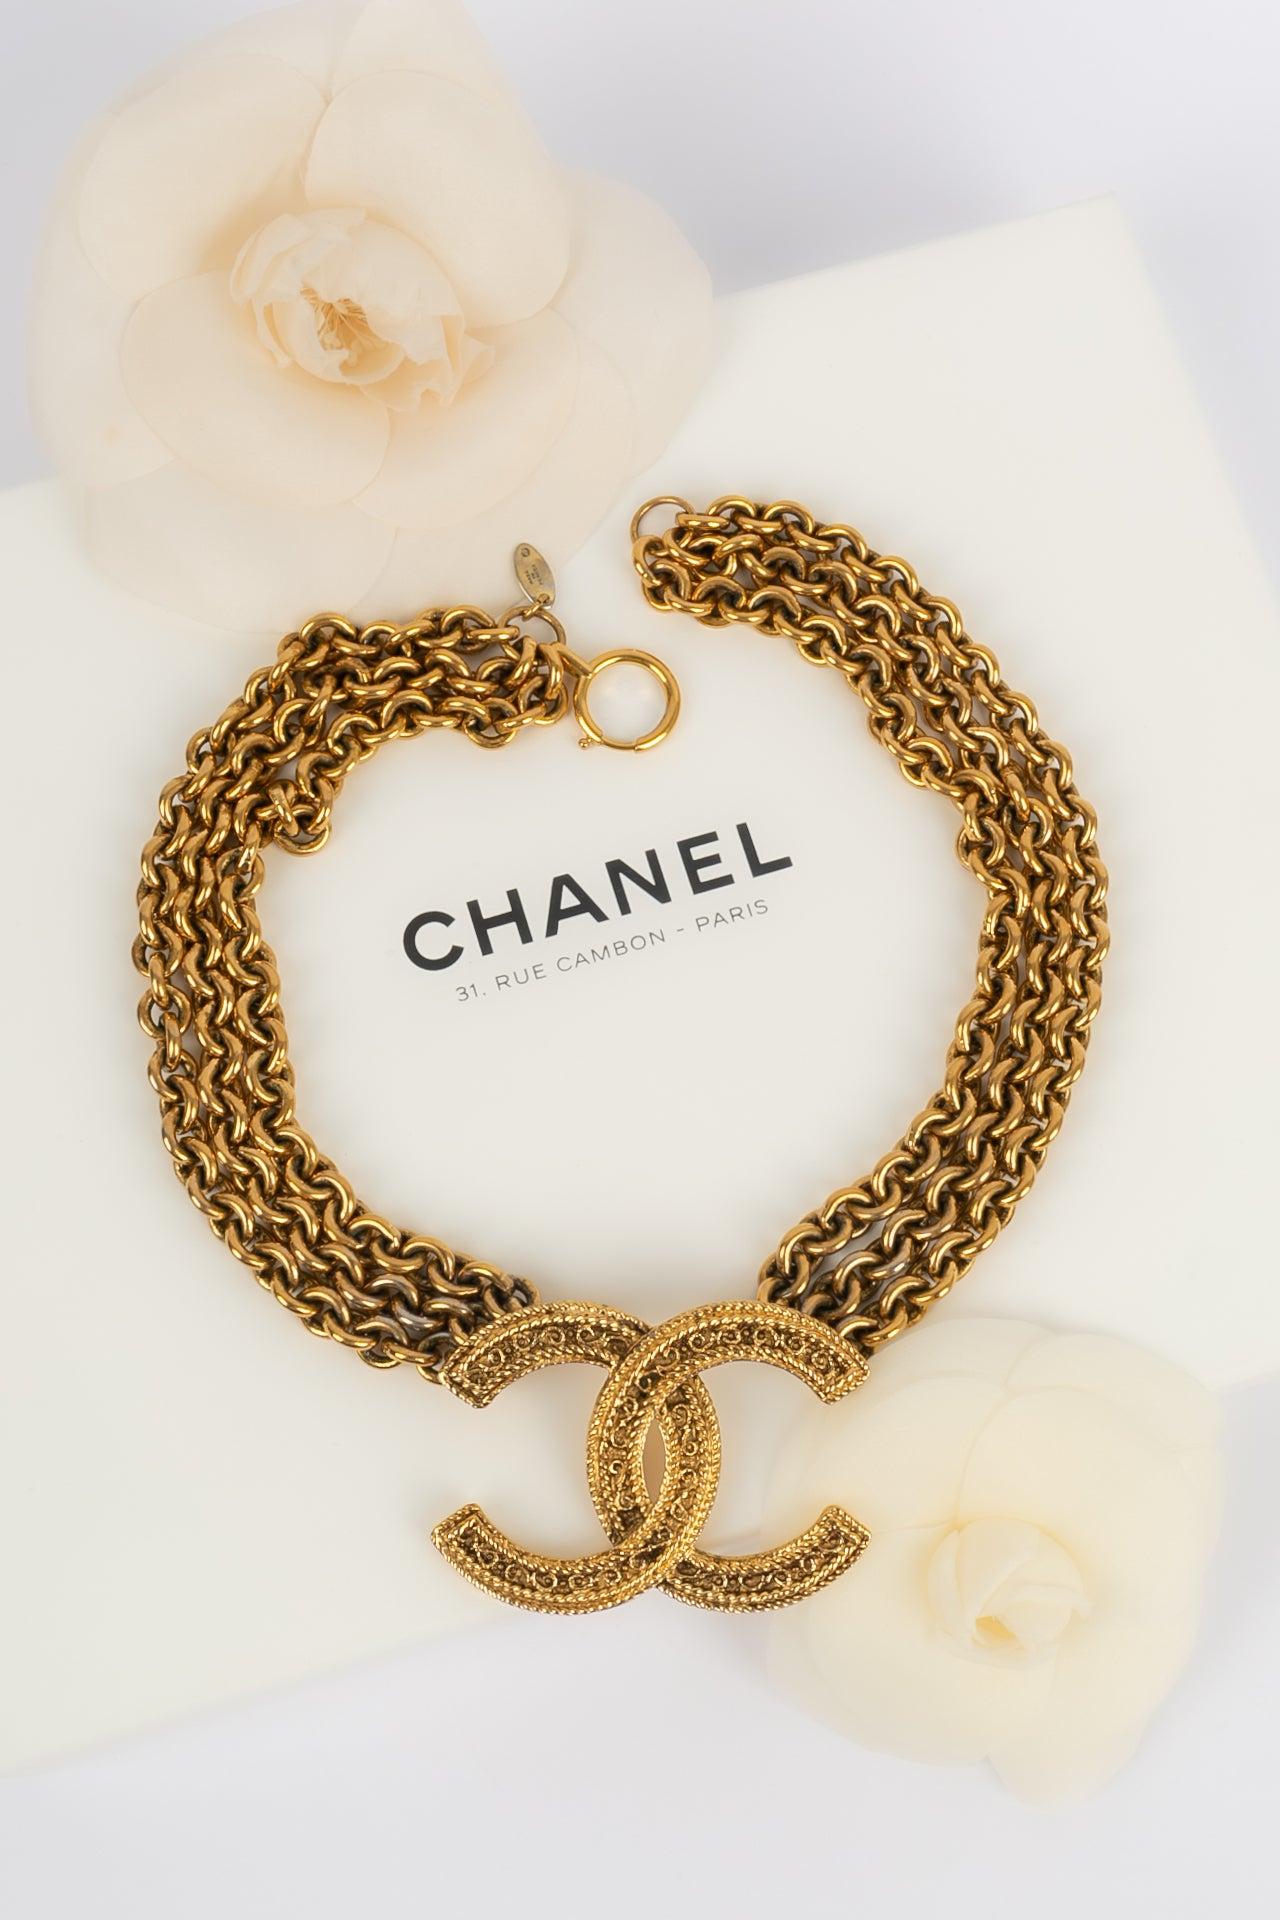 Chanel - (Made in France) Kurze Halskette aus drei goldenen Metallketten und einem zentralen cc-Anhänger. Collection'S 1985.

Zusätzliche Informationen:
Abmessungen: Länge der kürzesten Reihe: 45 cm
Zustand: Sehr guter Zustand
Sellers Ref-Nummer: